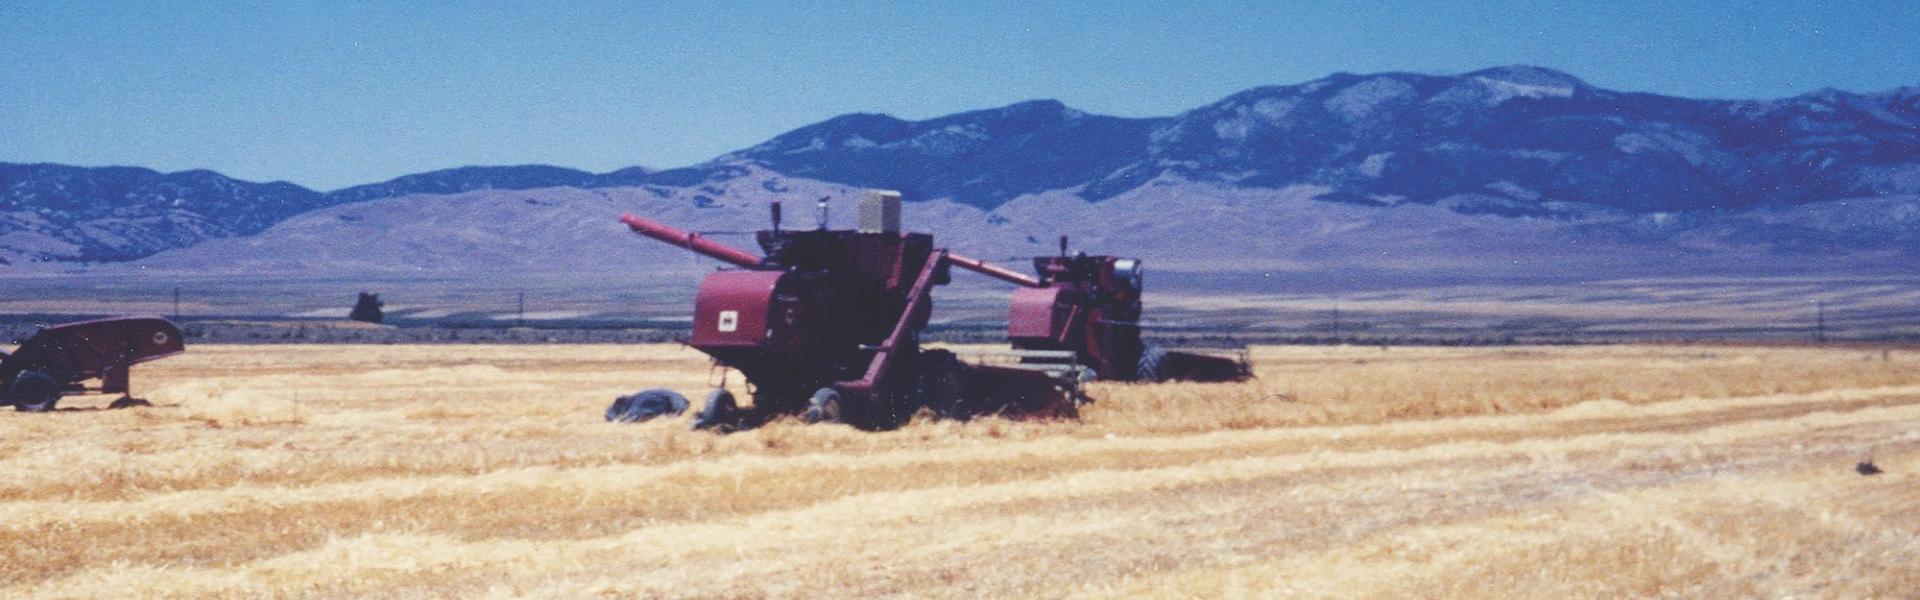 1960s combine in a field